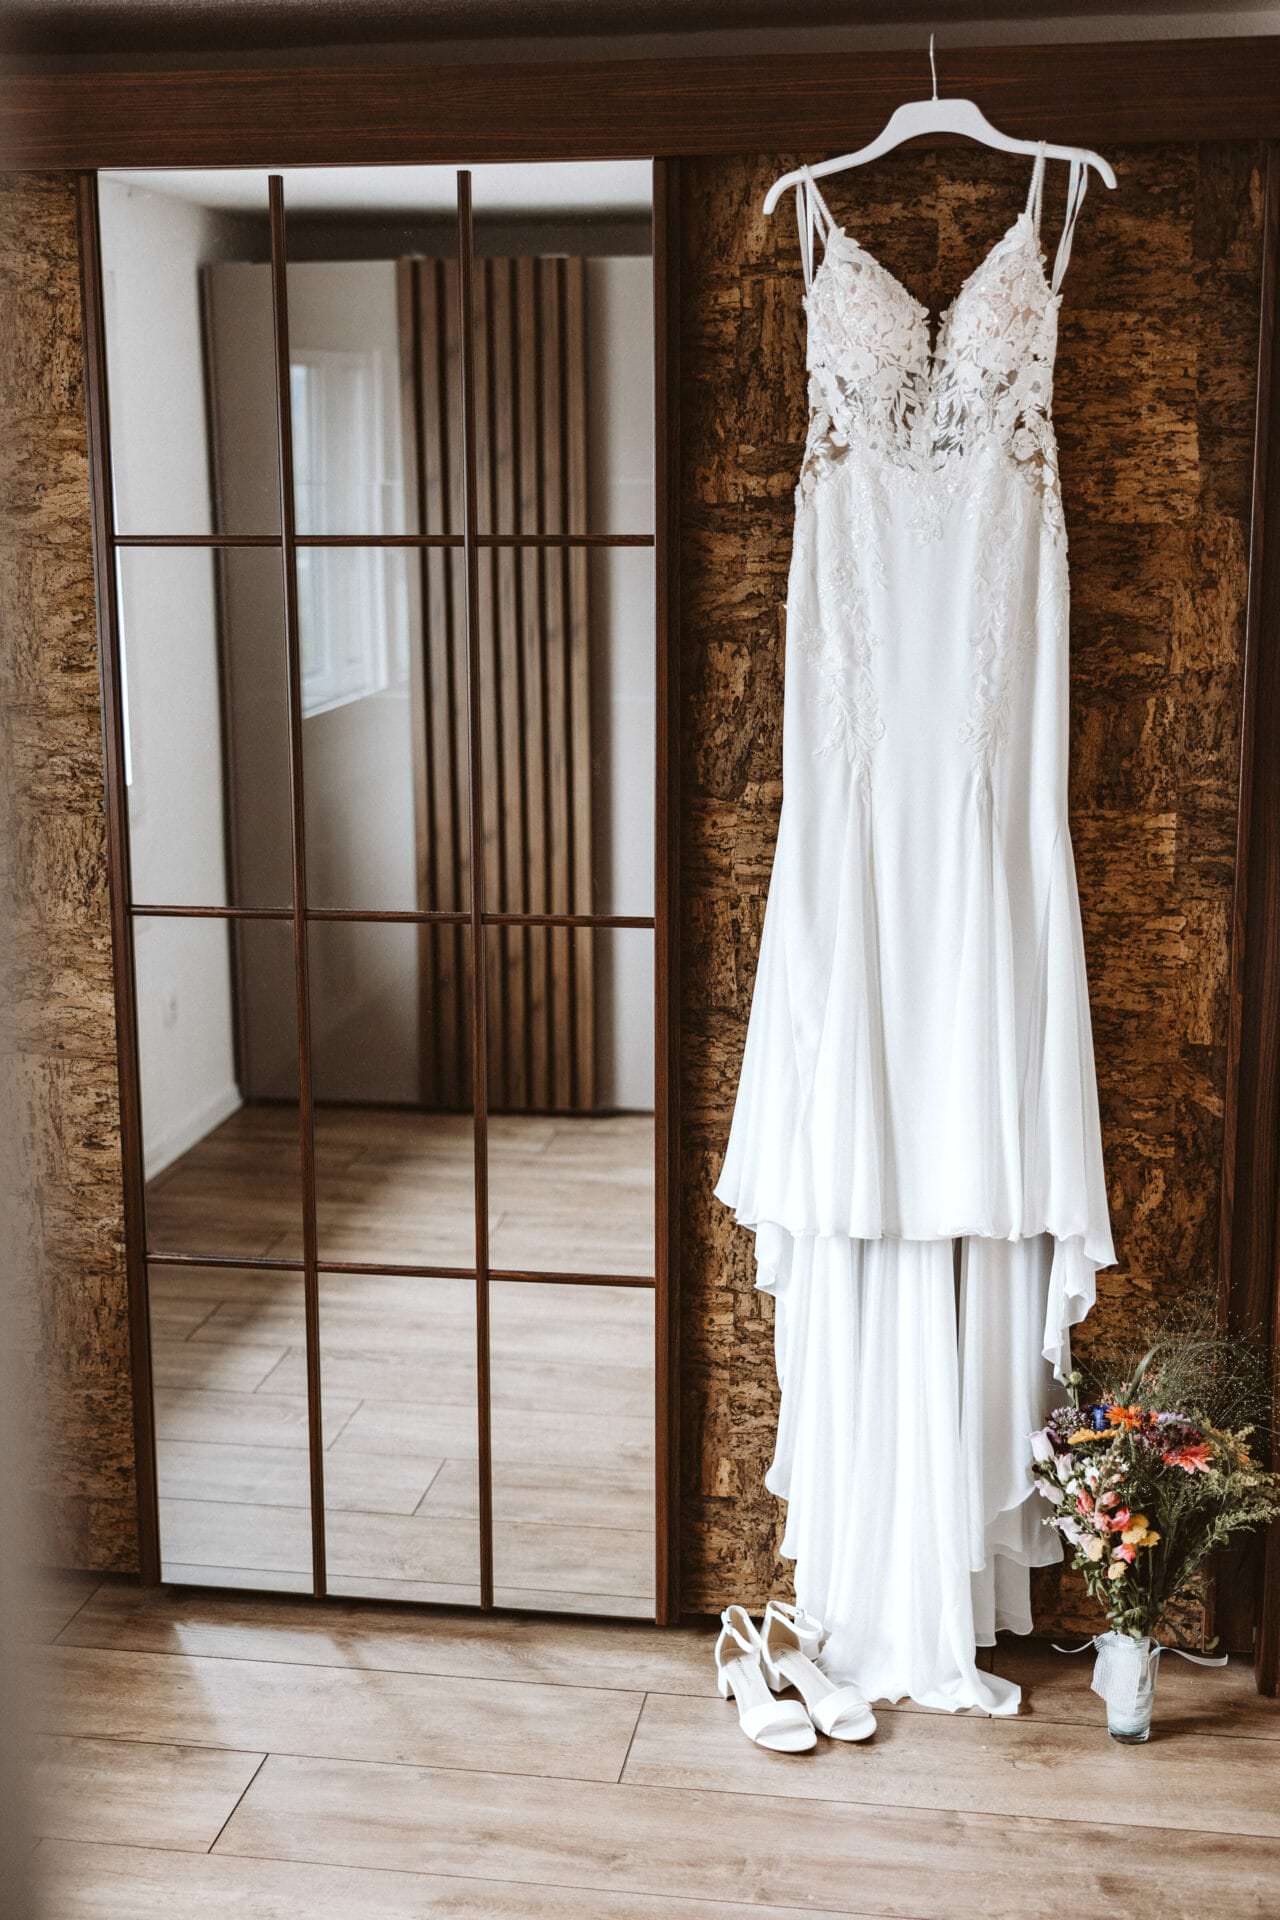 Hochzeitsfotograf Recklinghausen Hochzeit Heiraten Hochzeitsfotos - Hochzeitskleid hängt auf einem weißen Kleiderbügel neben einem Spiegel. Unter dem Hochzeitskleid ist ein Blumenstrauß und Schuhe zu sehen